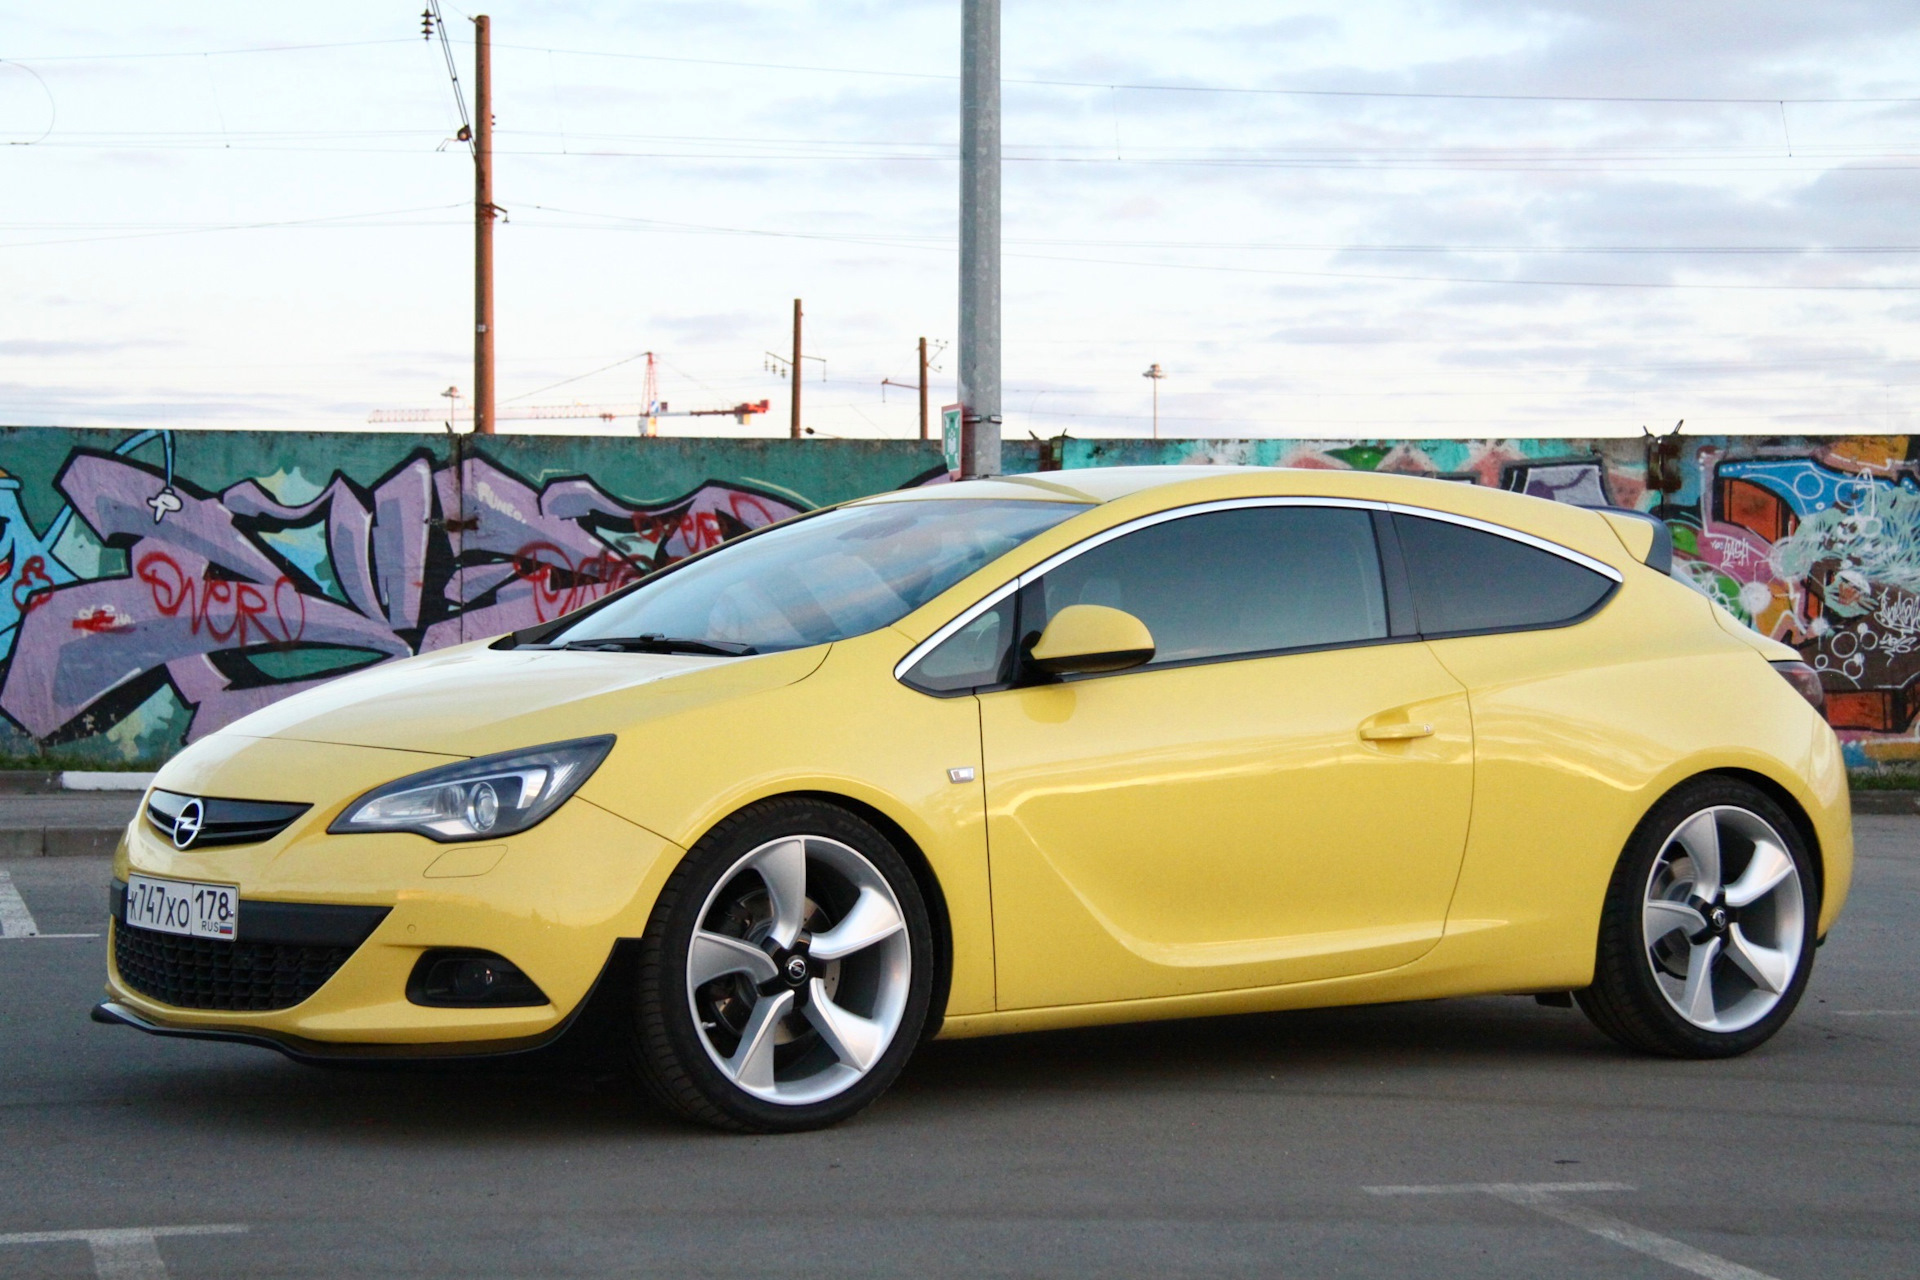 Opel 20. Opel Astra GTC. Opel Astra GTC 2012. Opel Astra GTC r20. Opel Astra GTC 2012 желтый.